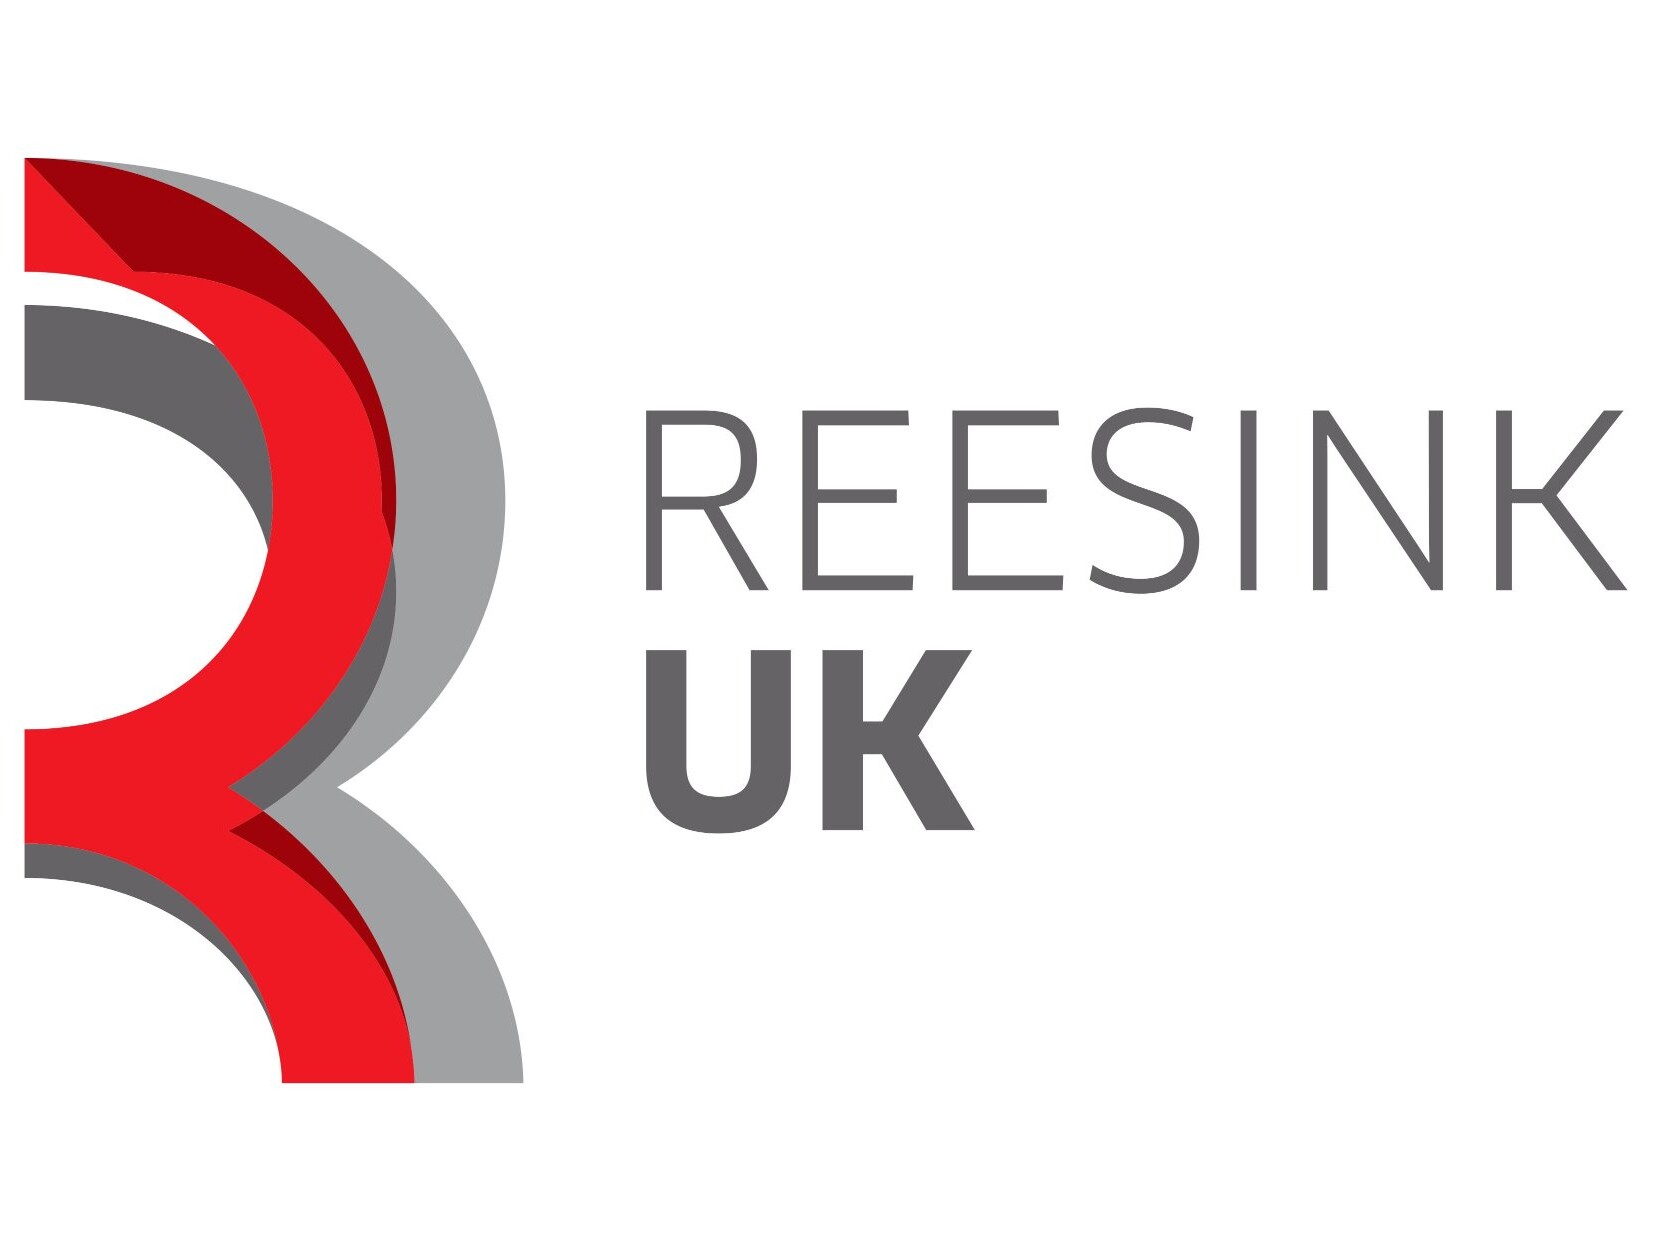 Reesink UK logo